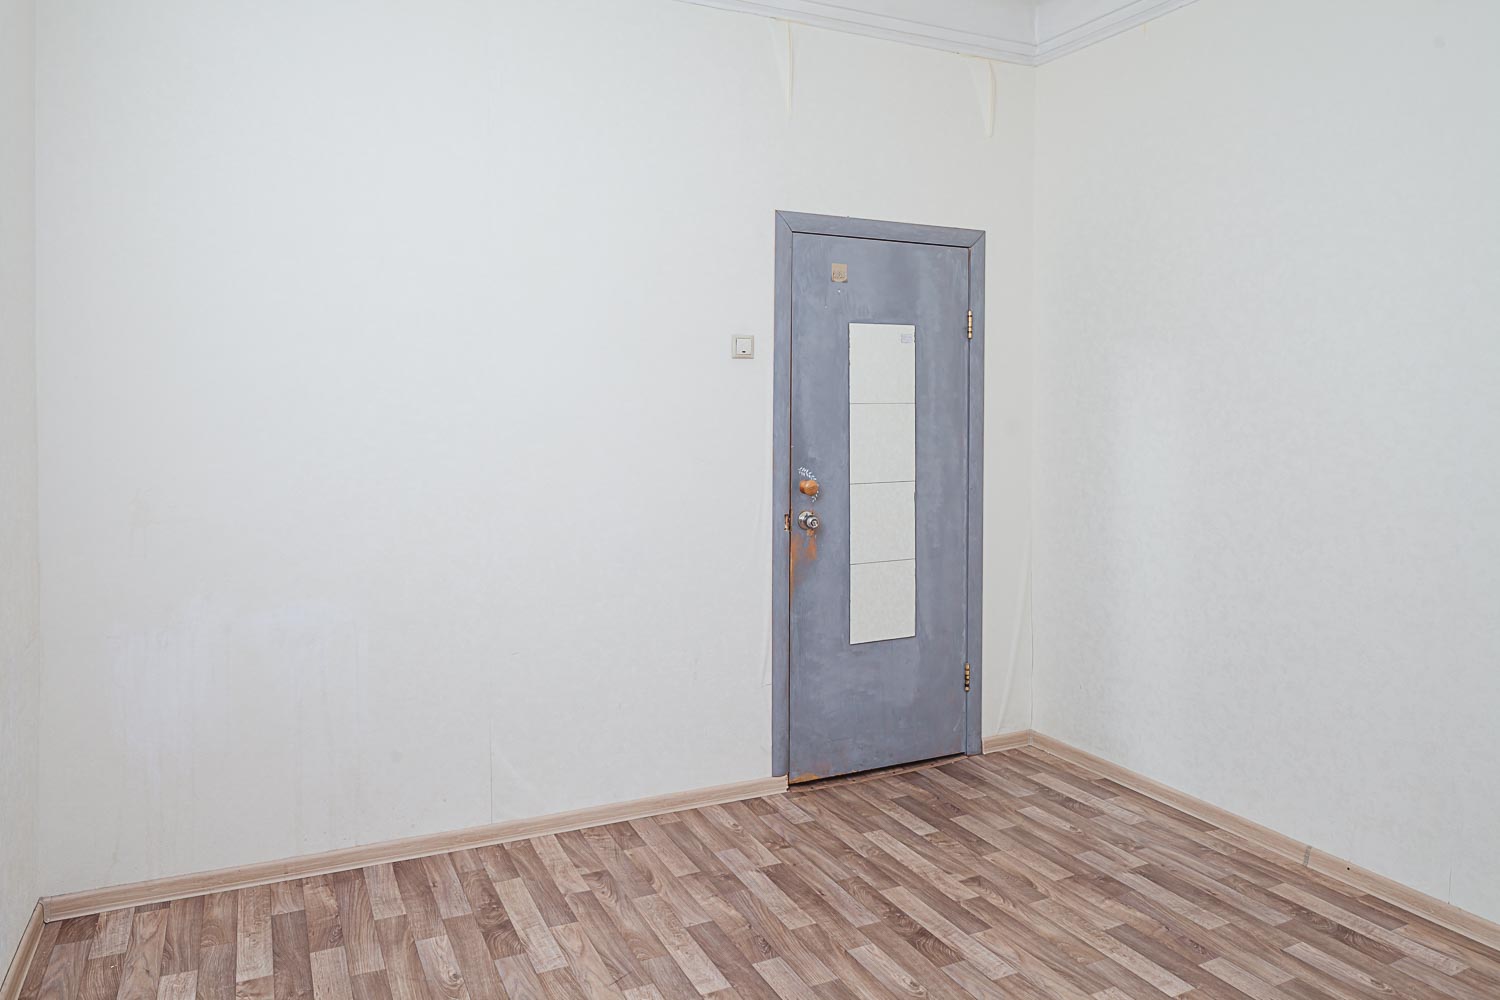 Продам квартиру в Москве по адресу Капельский переулок, 13, площадь 80 квм Недвижимость Москва (Россия)  В квартире очень тихо и светло